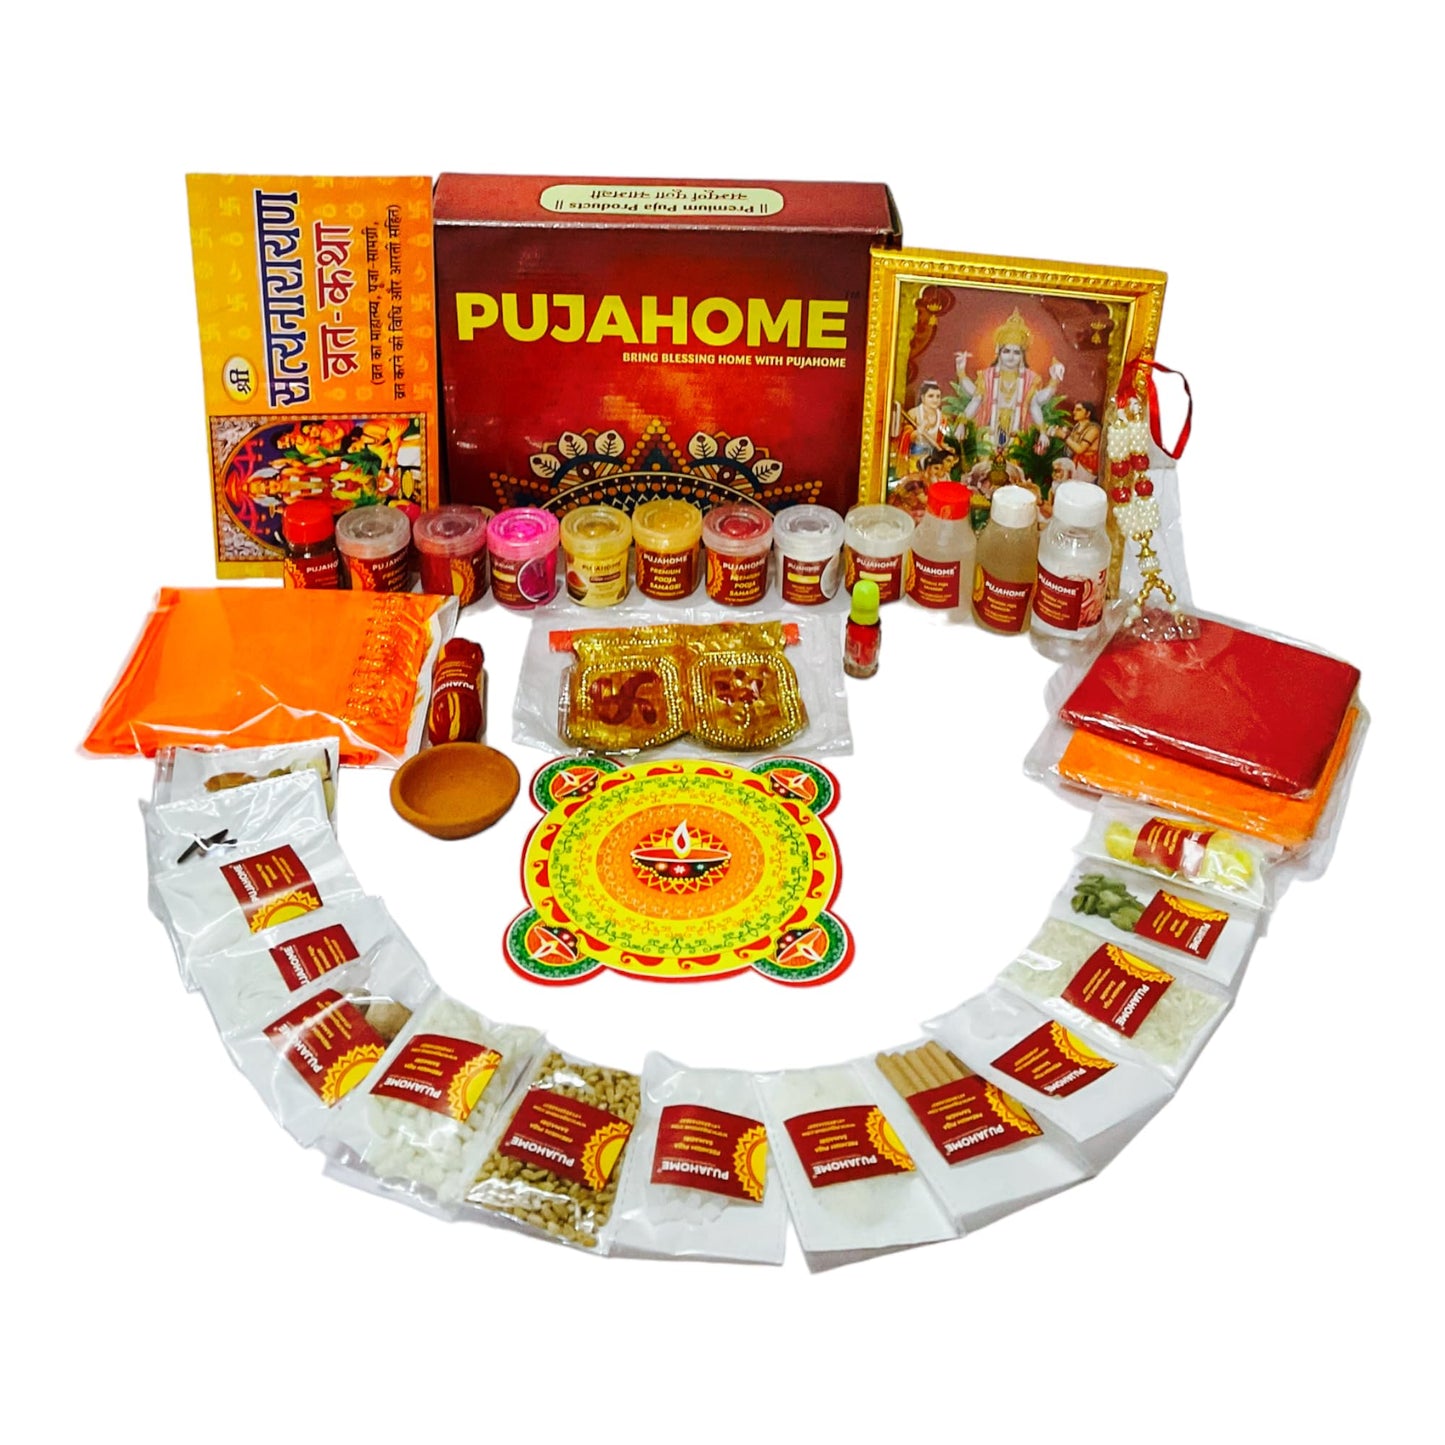 Pujahome Satya Narayan Puja Kit (42+ Items) with Katha and Detailed Puja Vidhi